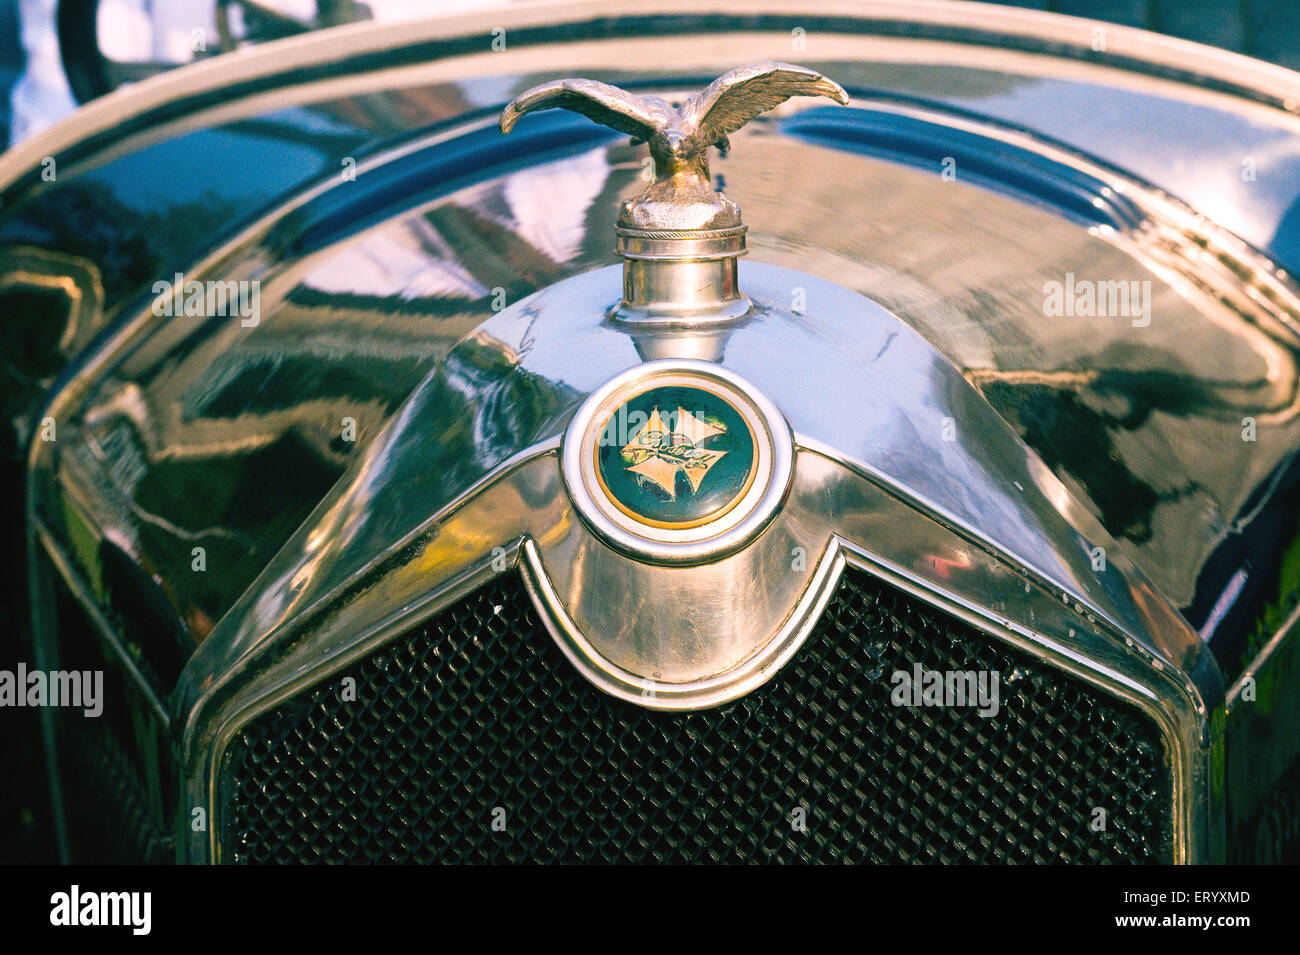 Bonnet ornaments – Auto Motor Klassiek – magazine about vintage cars